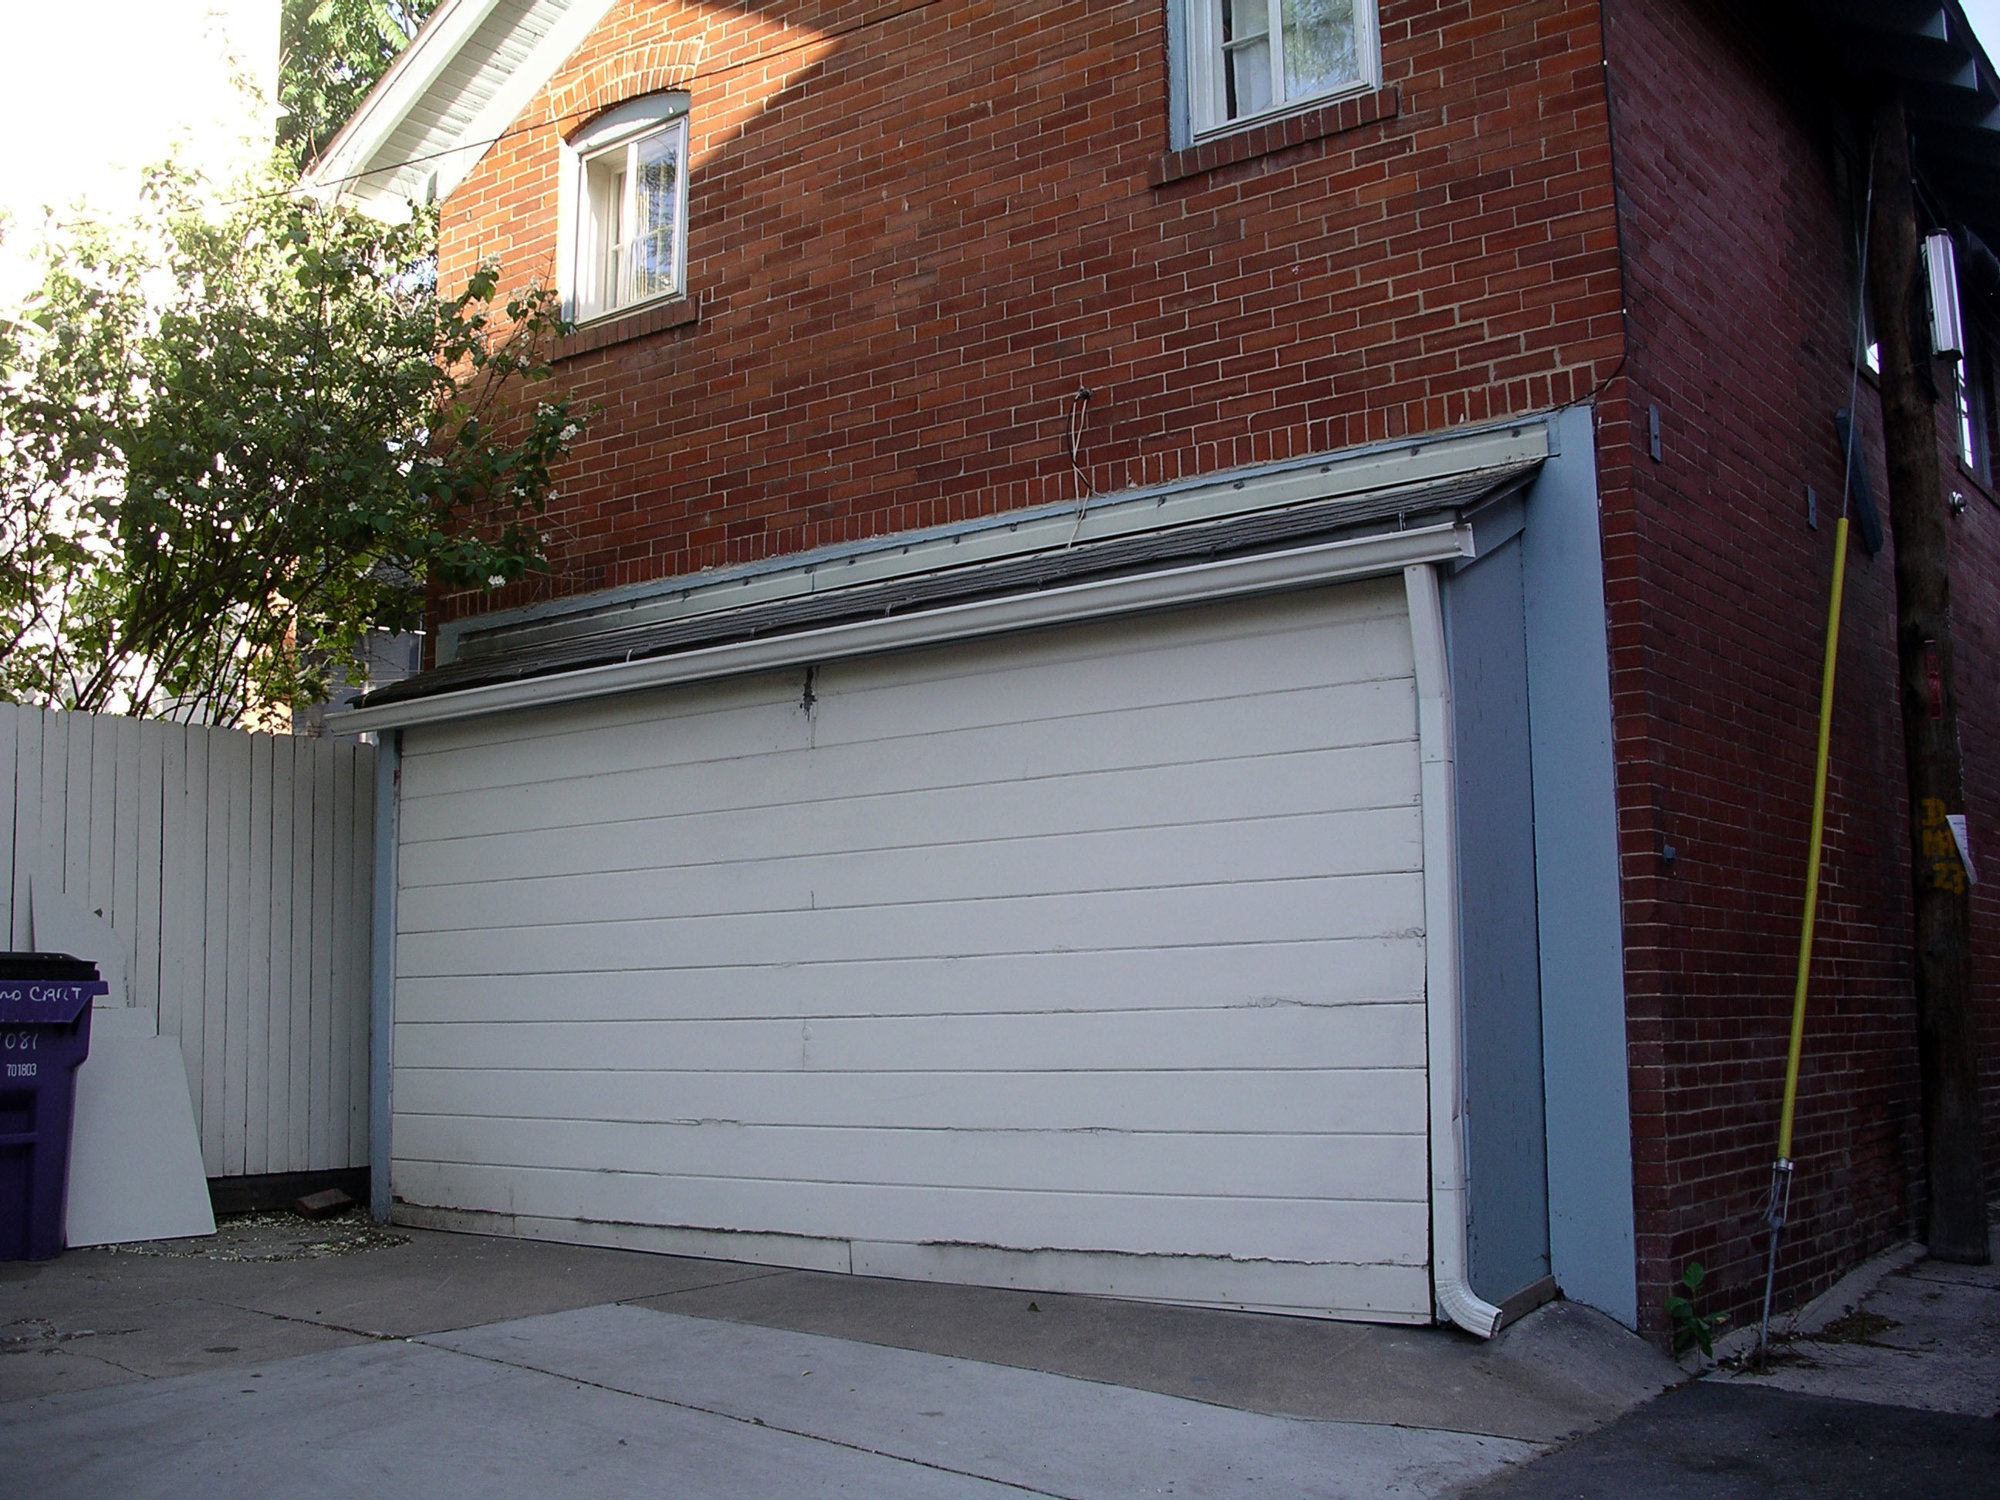 Fancy-Garage-Door-Extender-80-About-Remodel-Nice-Home-Interior-Ideas-with-Garage-Door-Extender.jpg